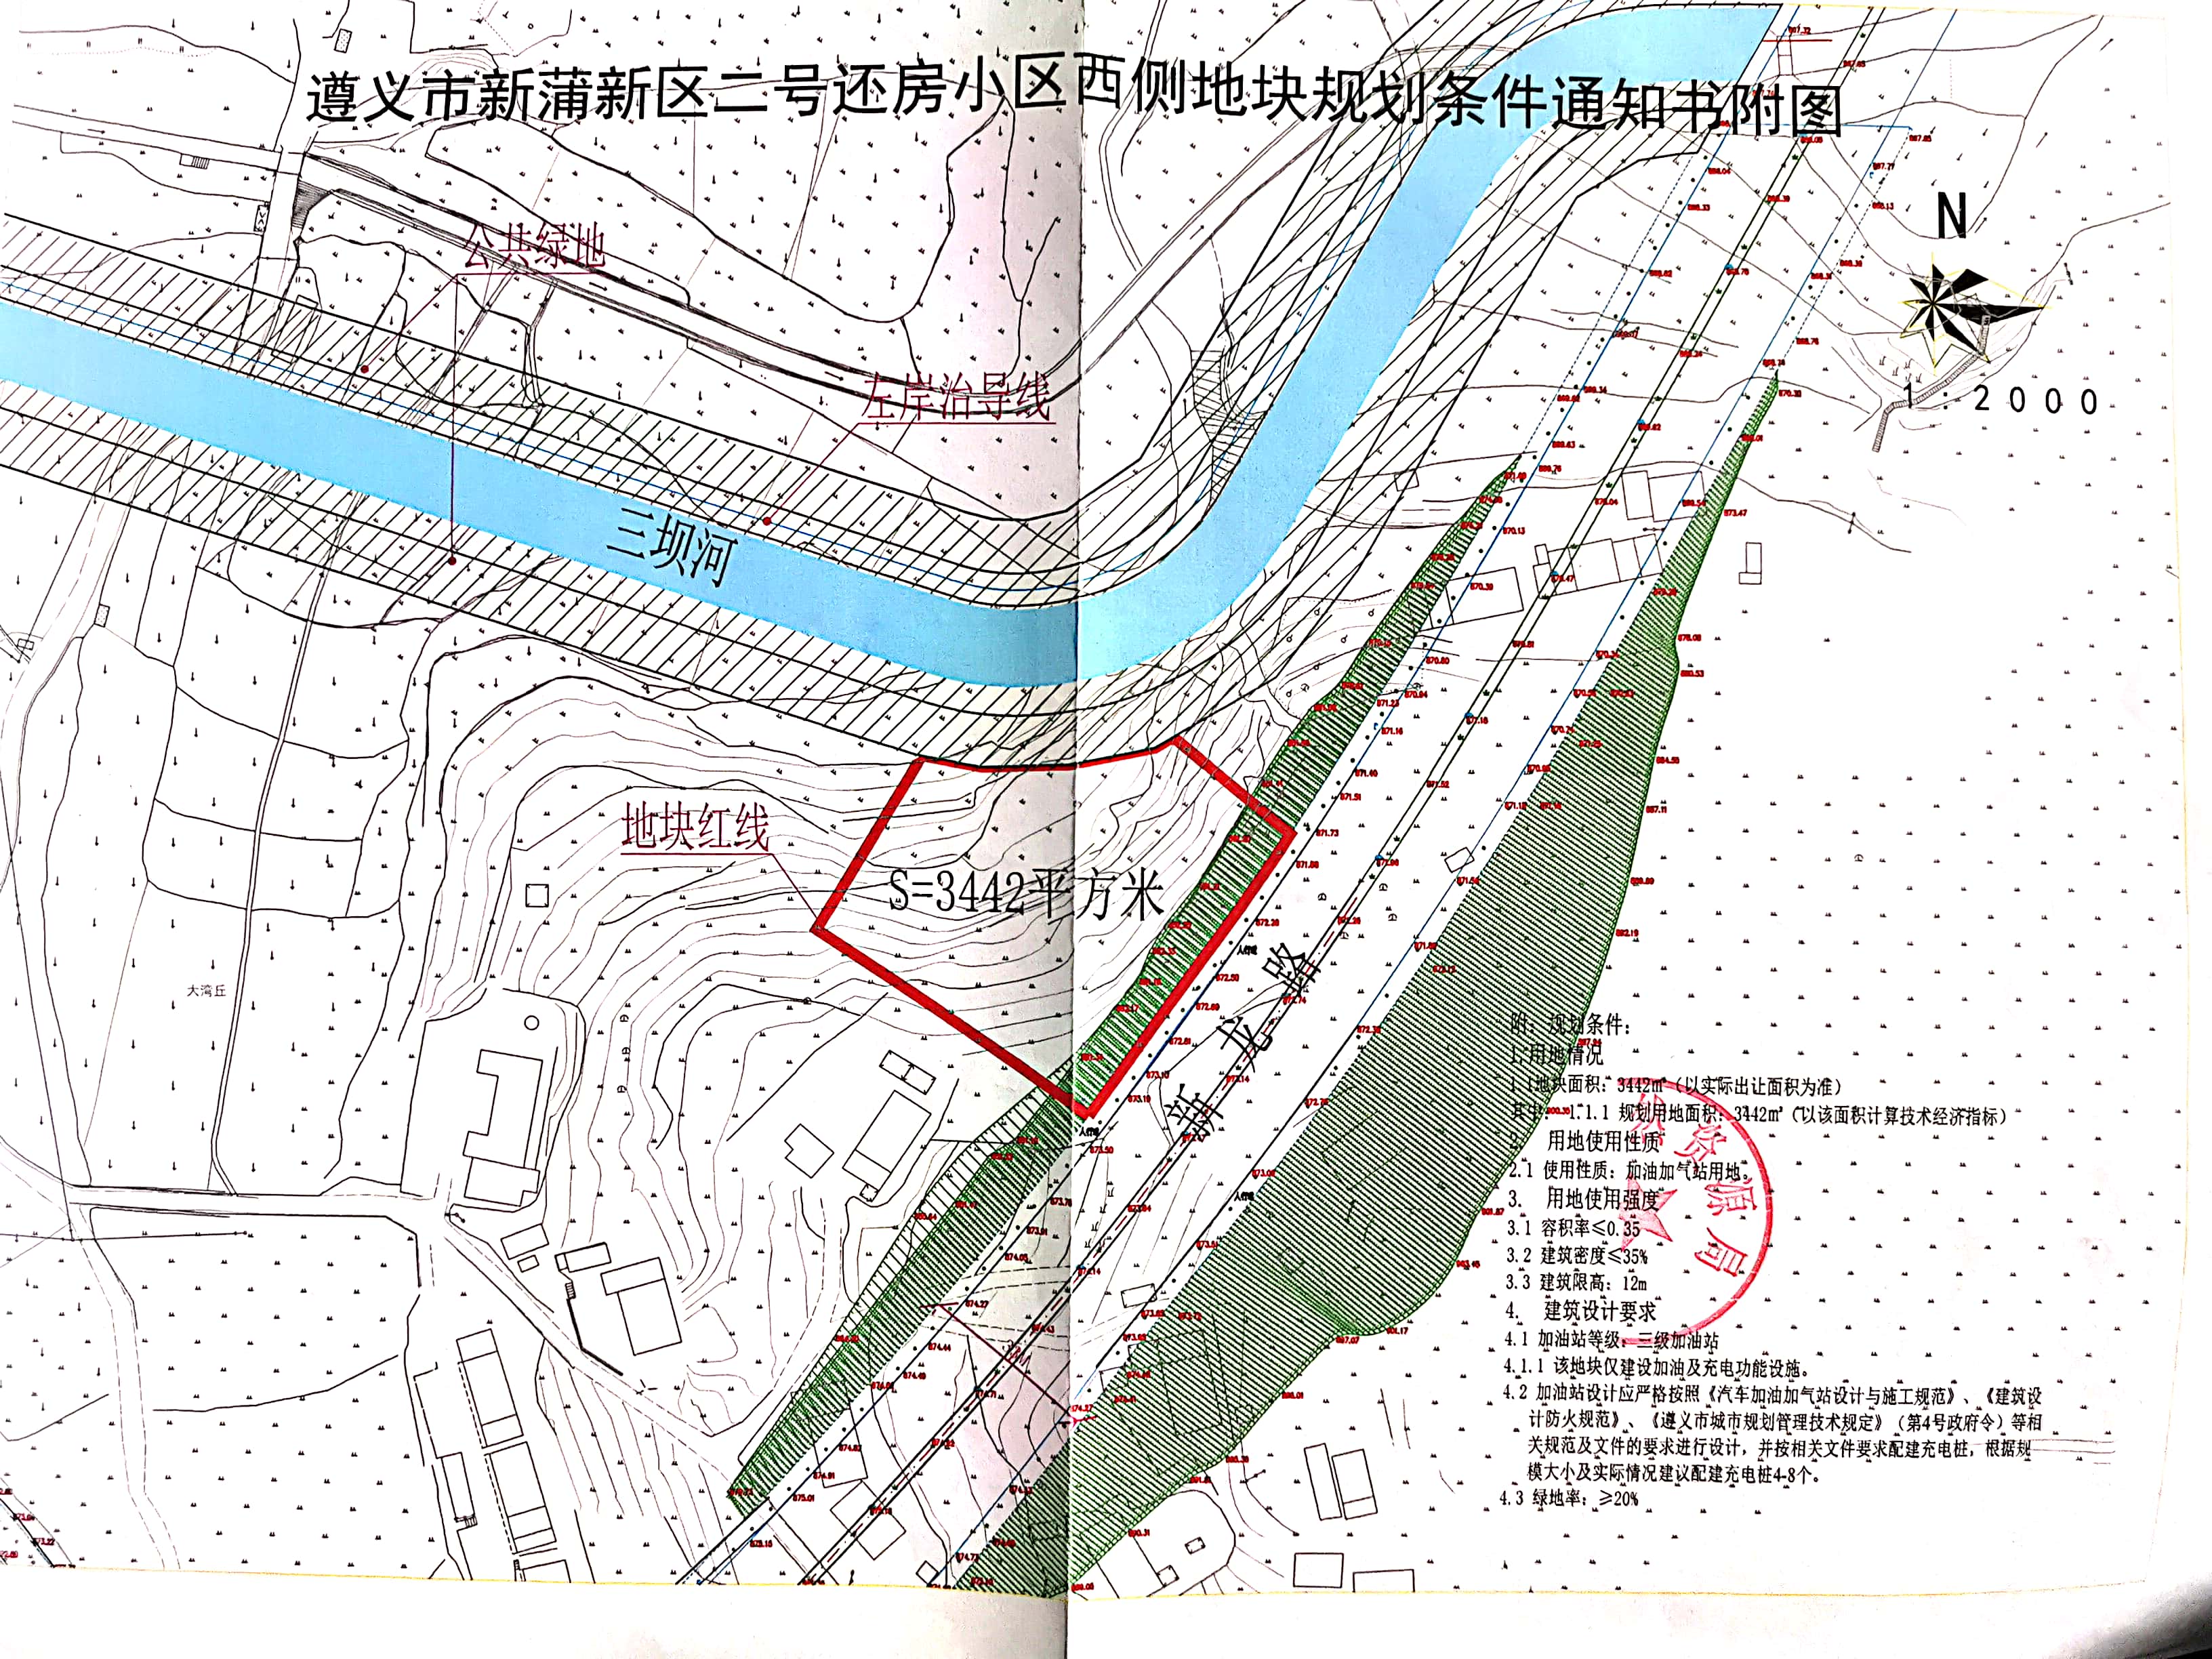 遵义新蒲新区地块挂牌出让 位于这几条路线东南侧（内容附图）-中国网地产